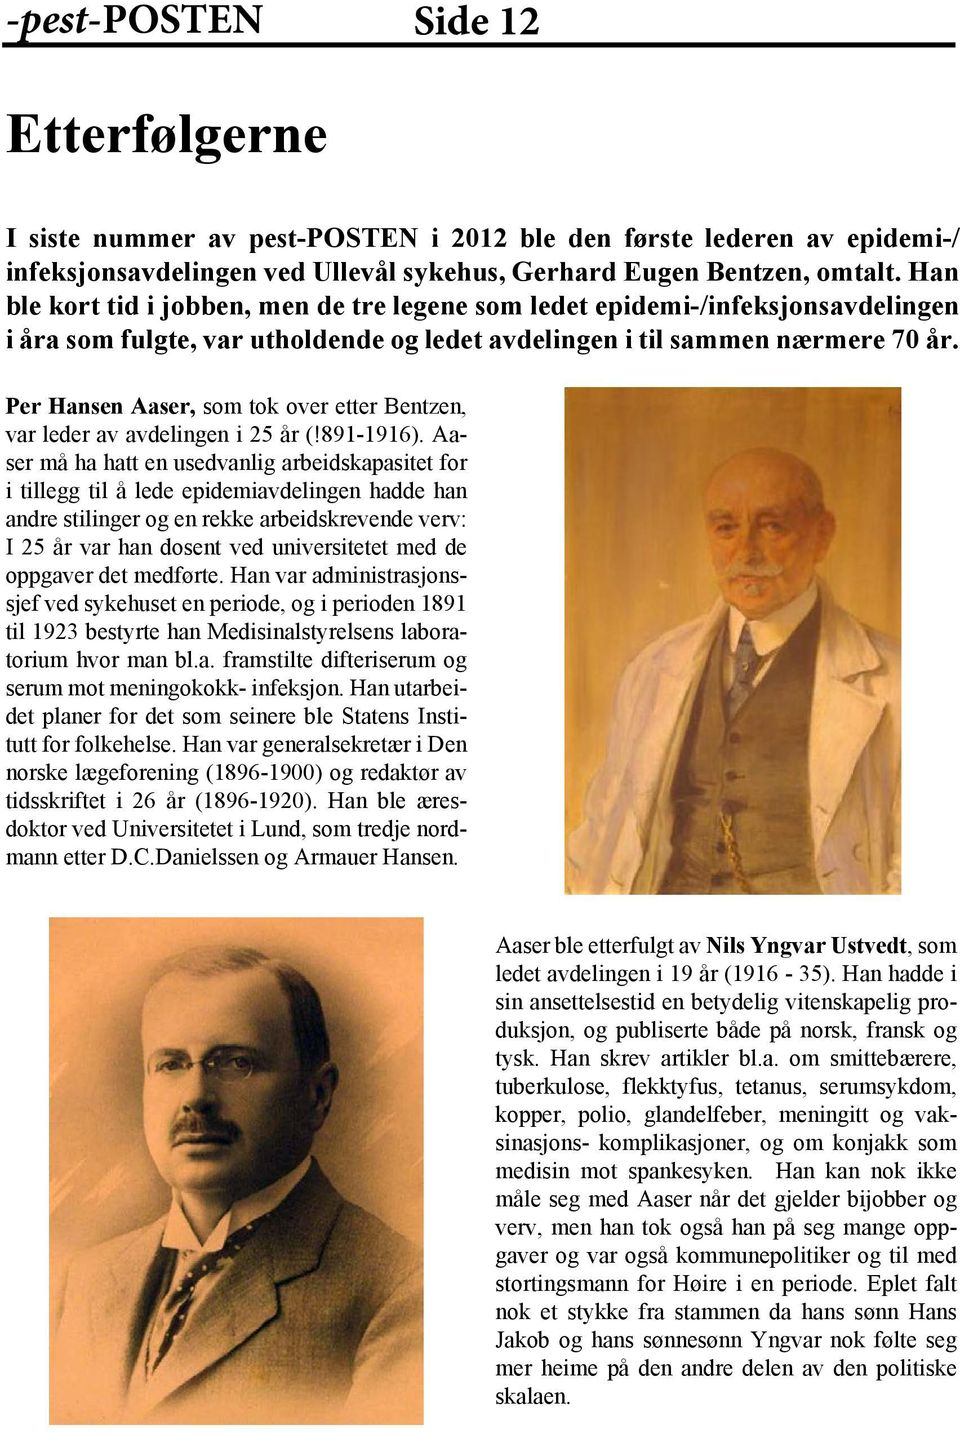 Per Hansen Aaser, som tok over etter Bentzen, var leder av avdelingen i 25 år (!891-1916).